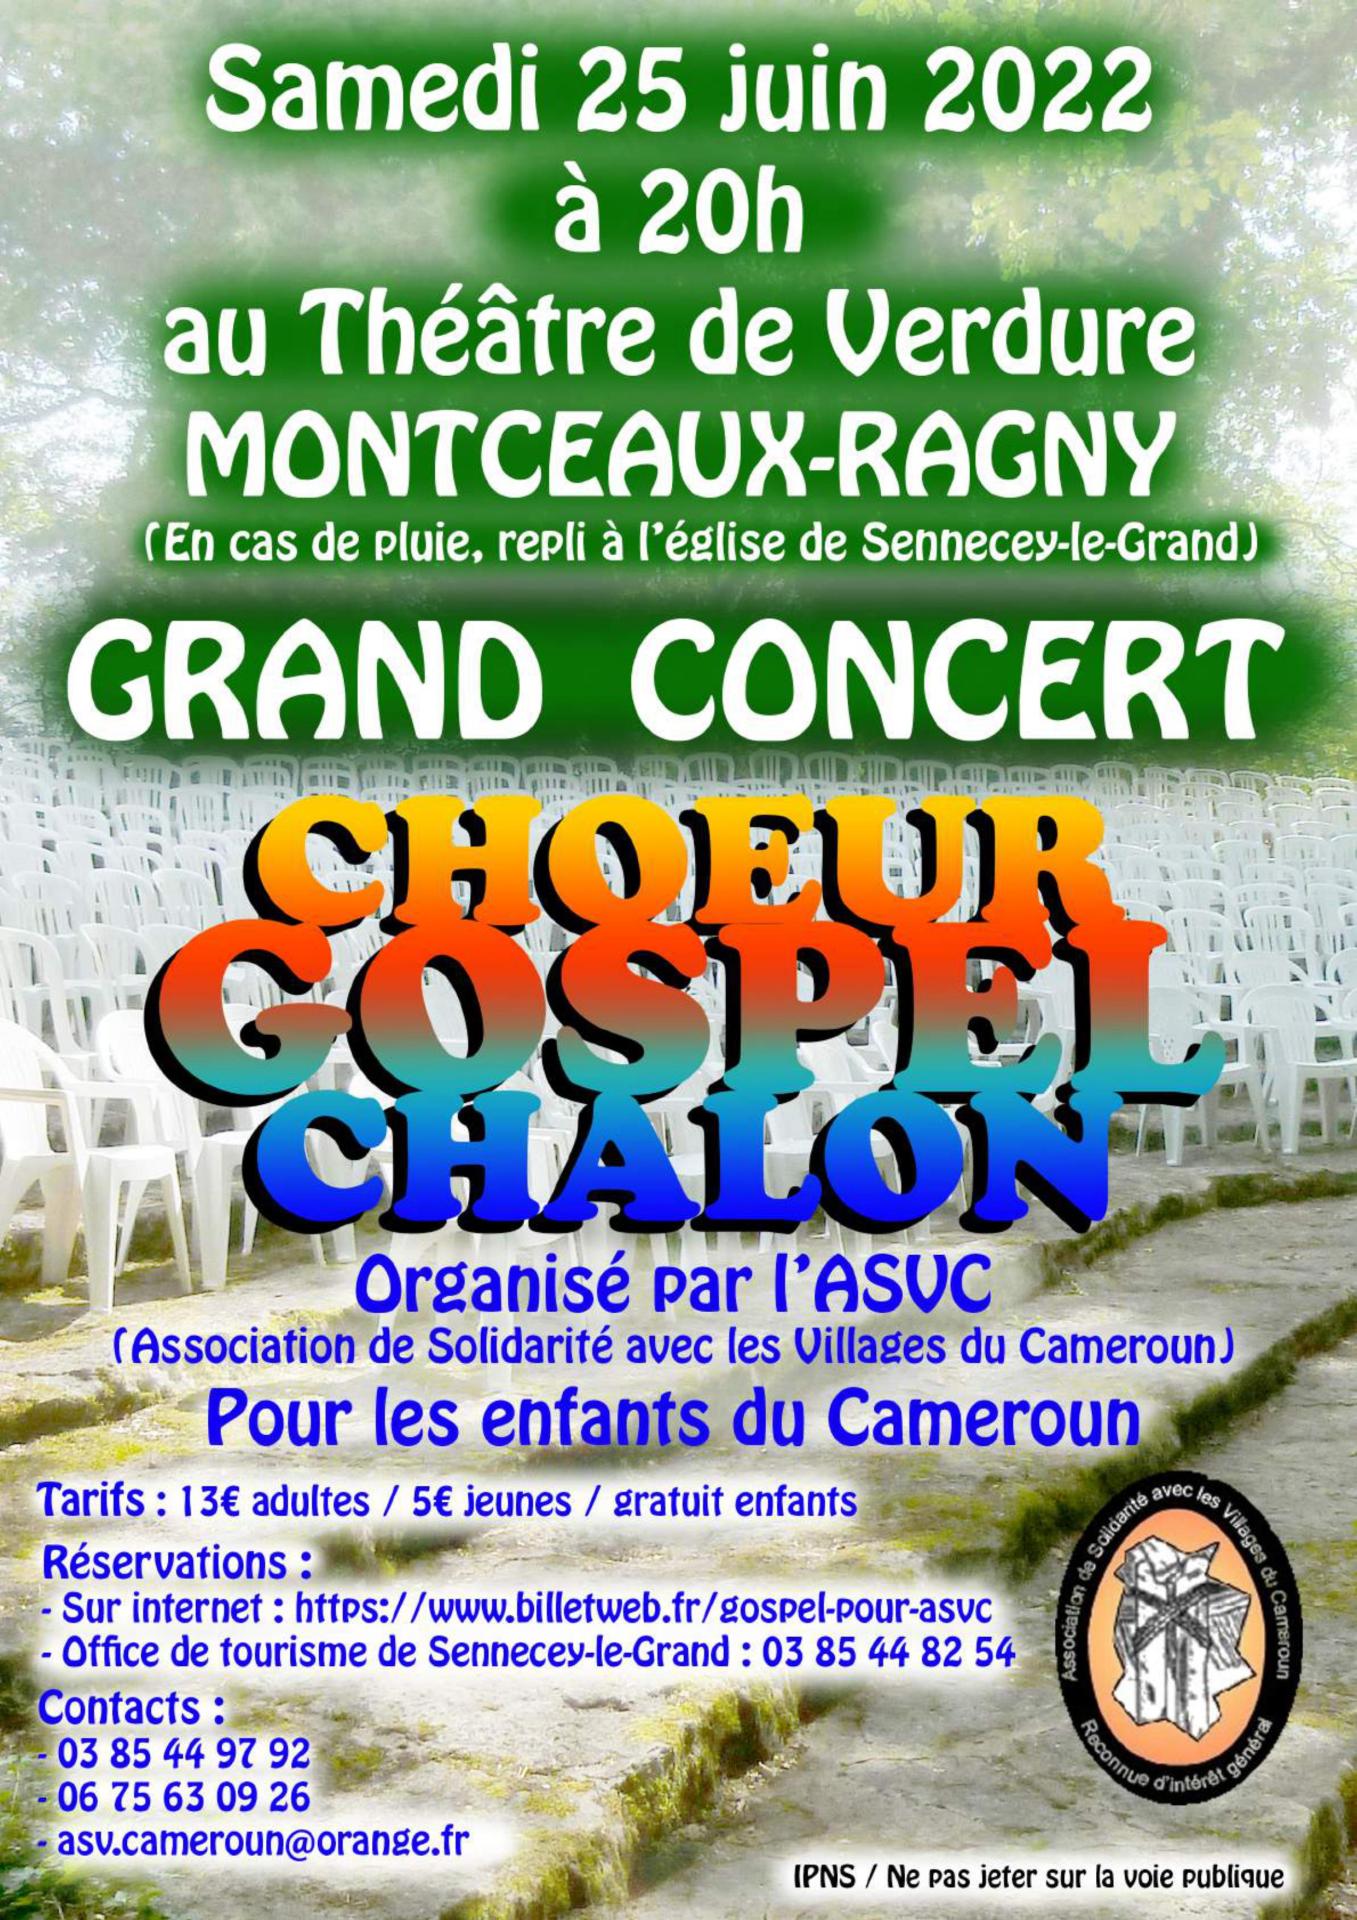 Grand concert au théâtre de verdure à Montceaux-Ragny 